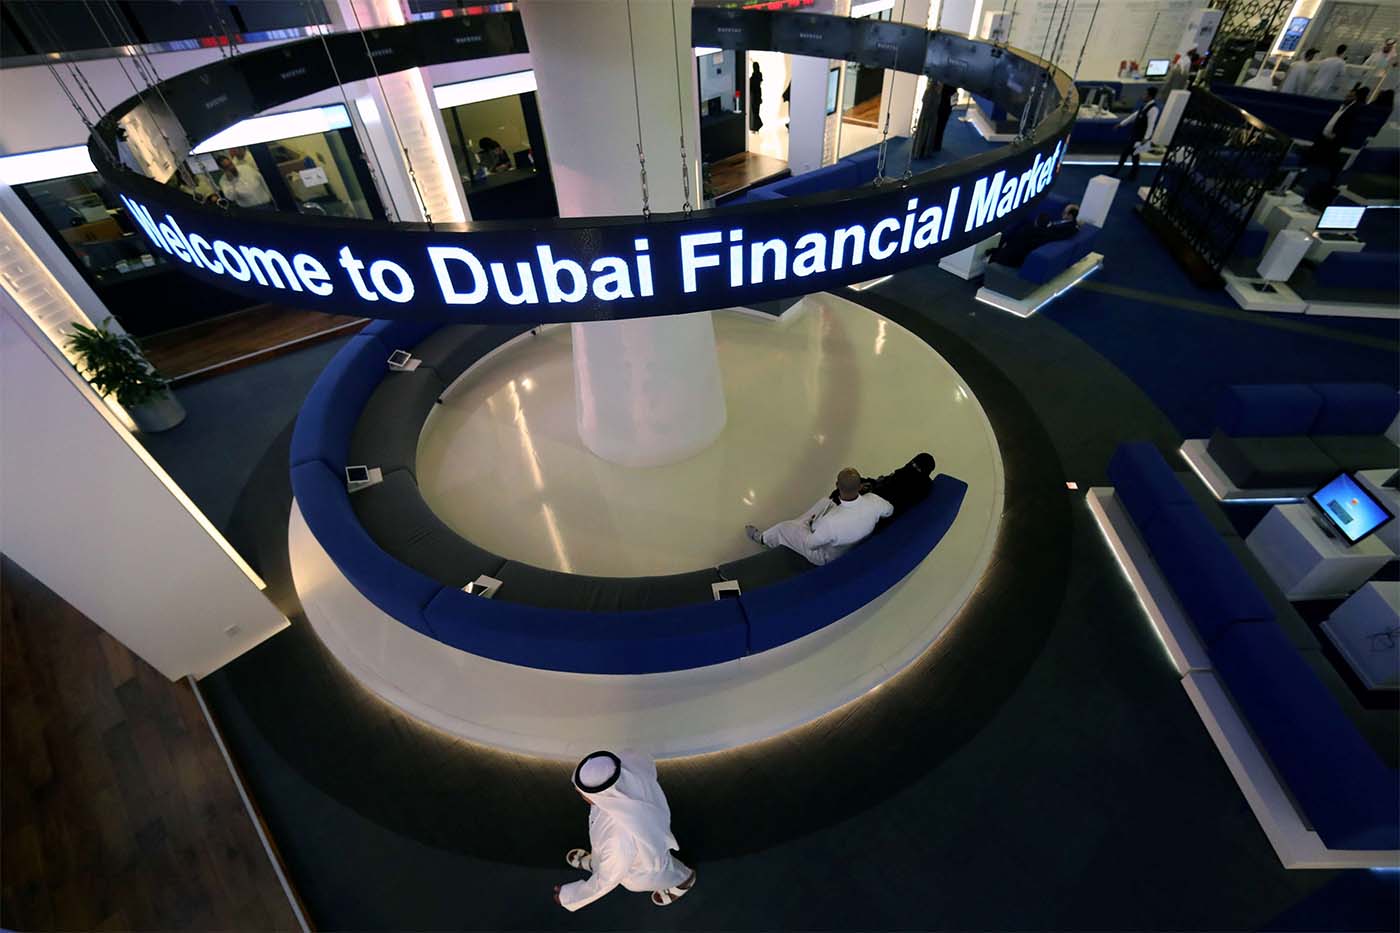 Dubai finaicial market